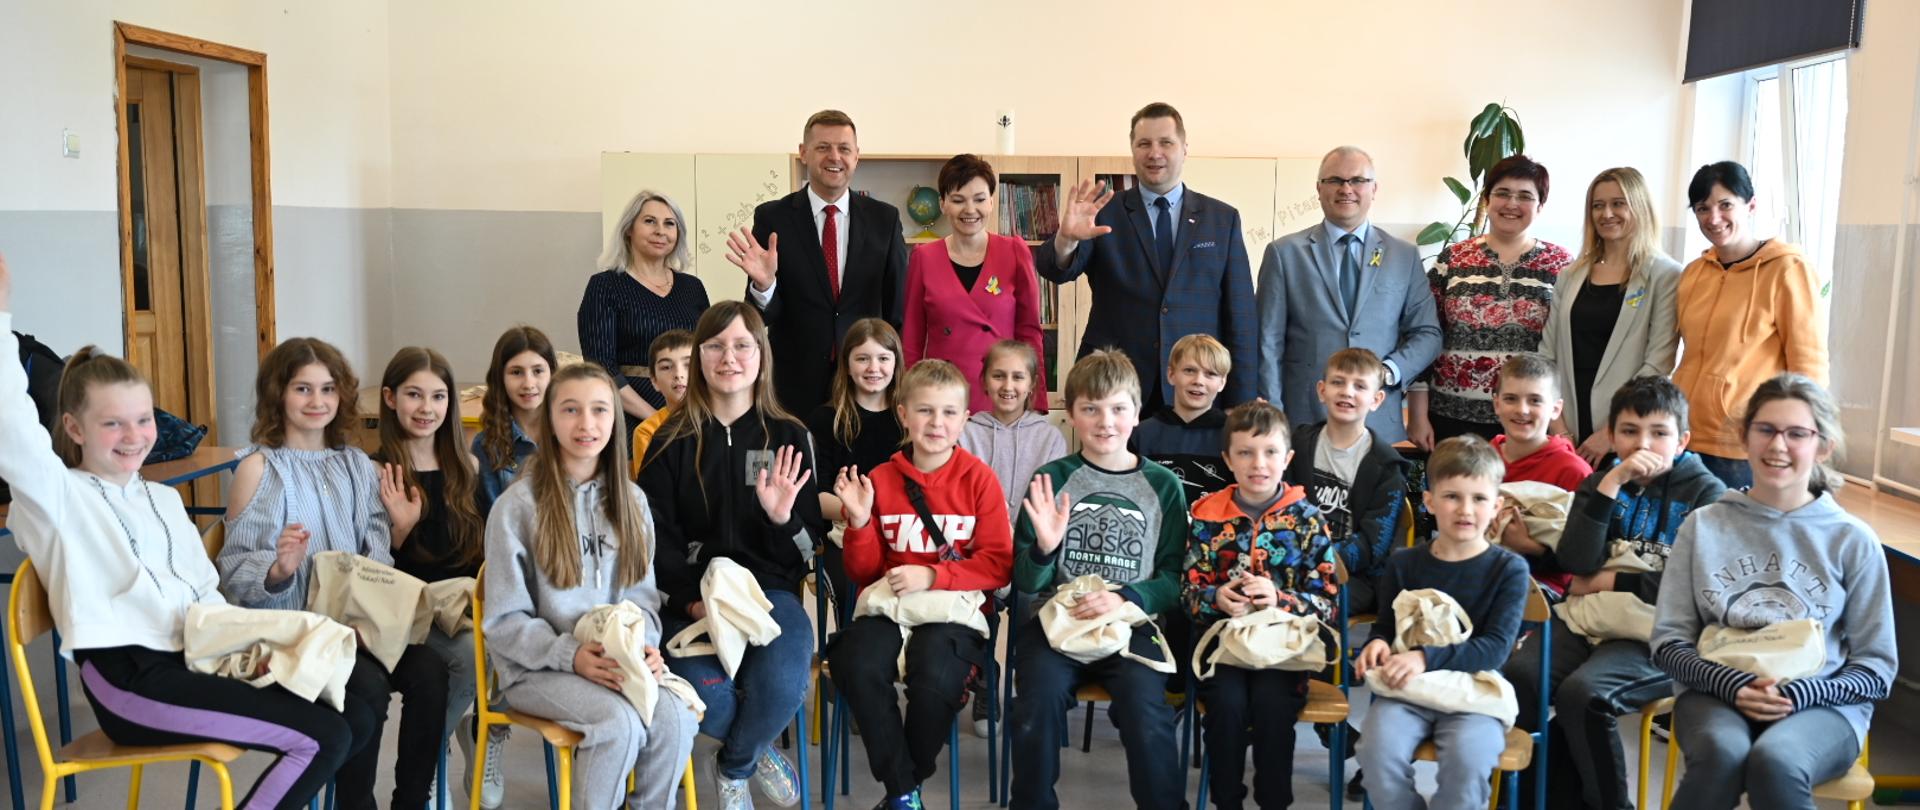 Zdjęcie zbiorowe, uczniowie siedzą na krzesłach, za nimi stoją nauczyciele i minister Czarnek.